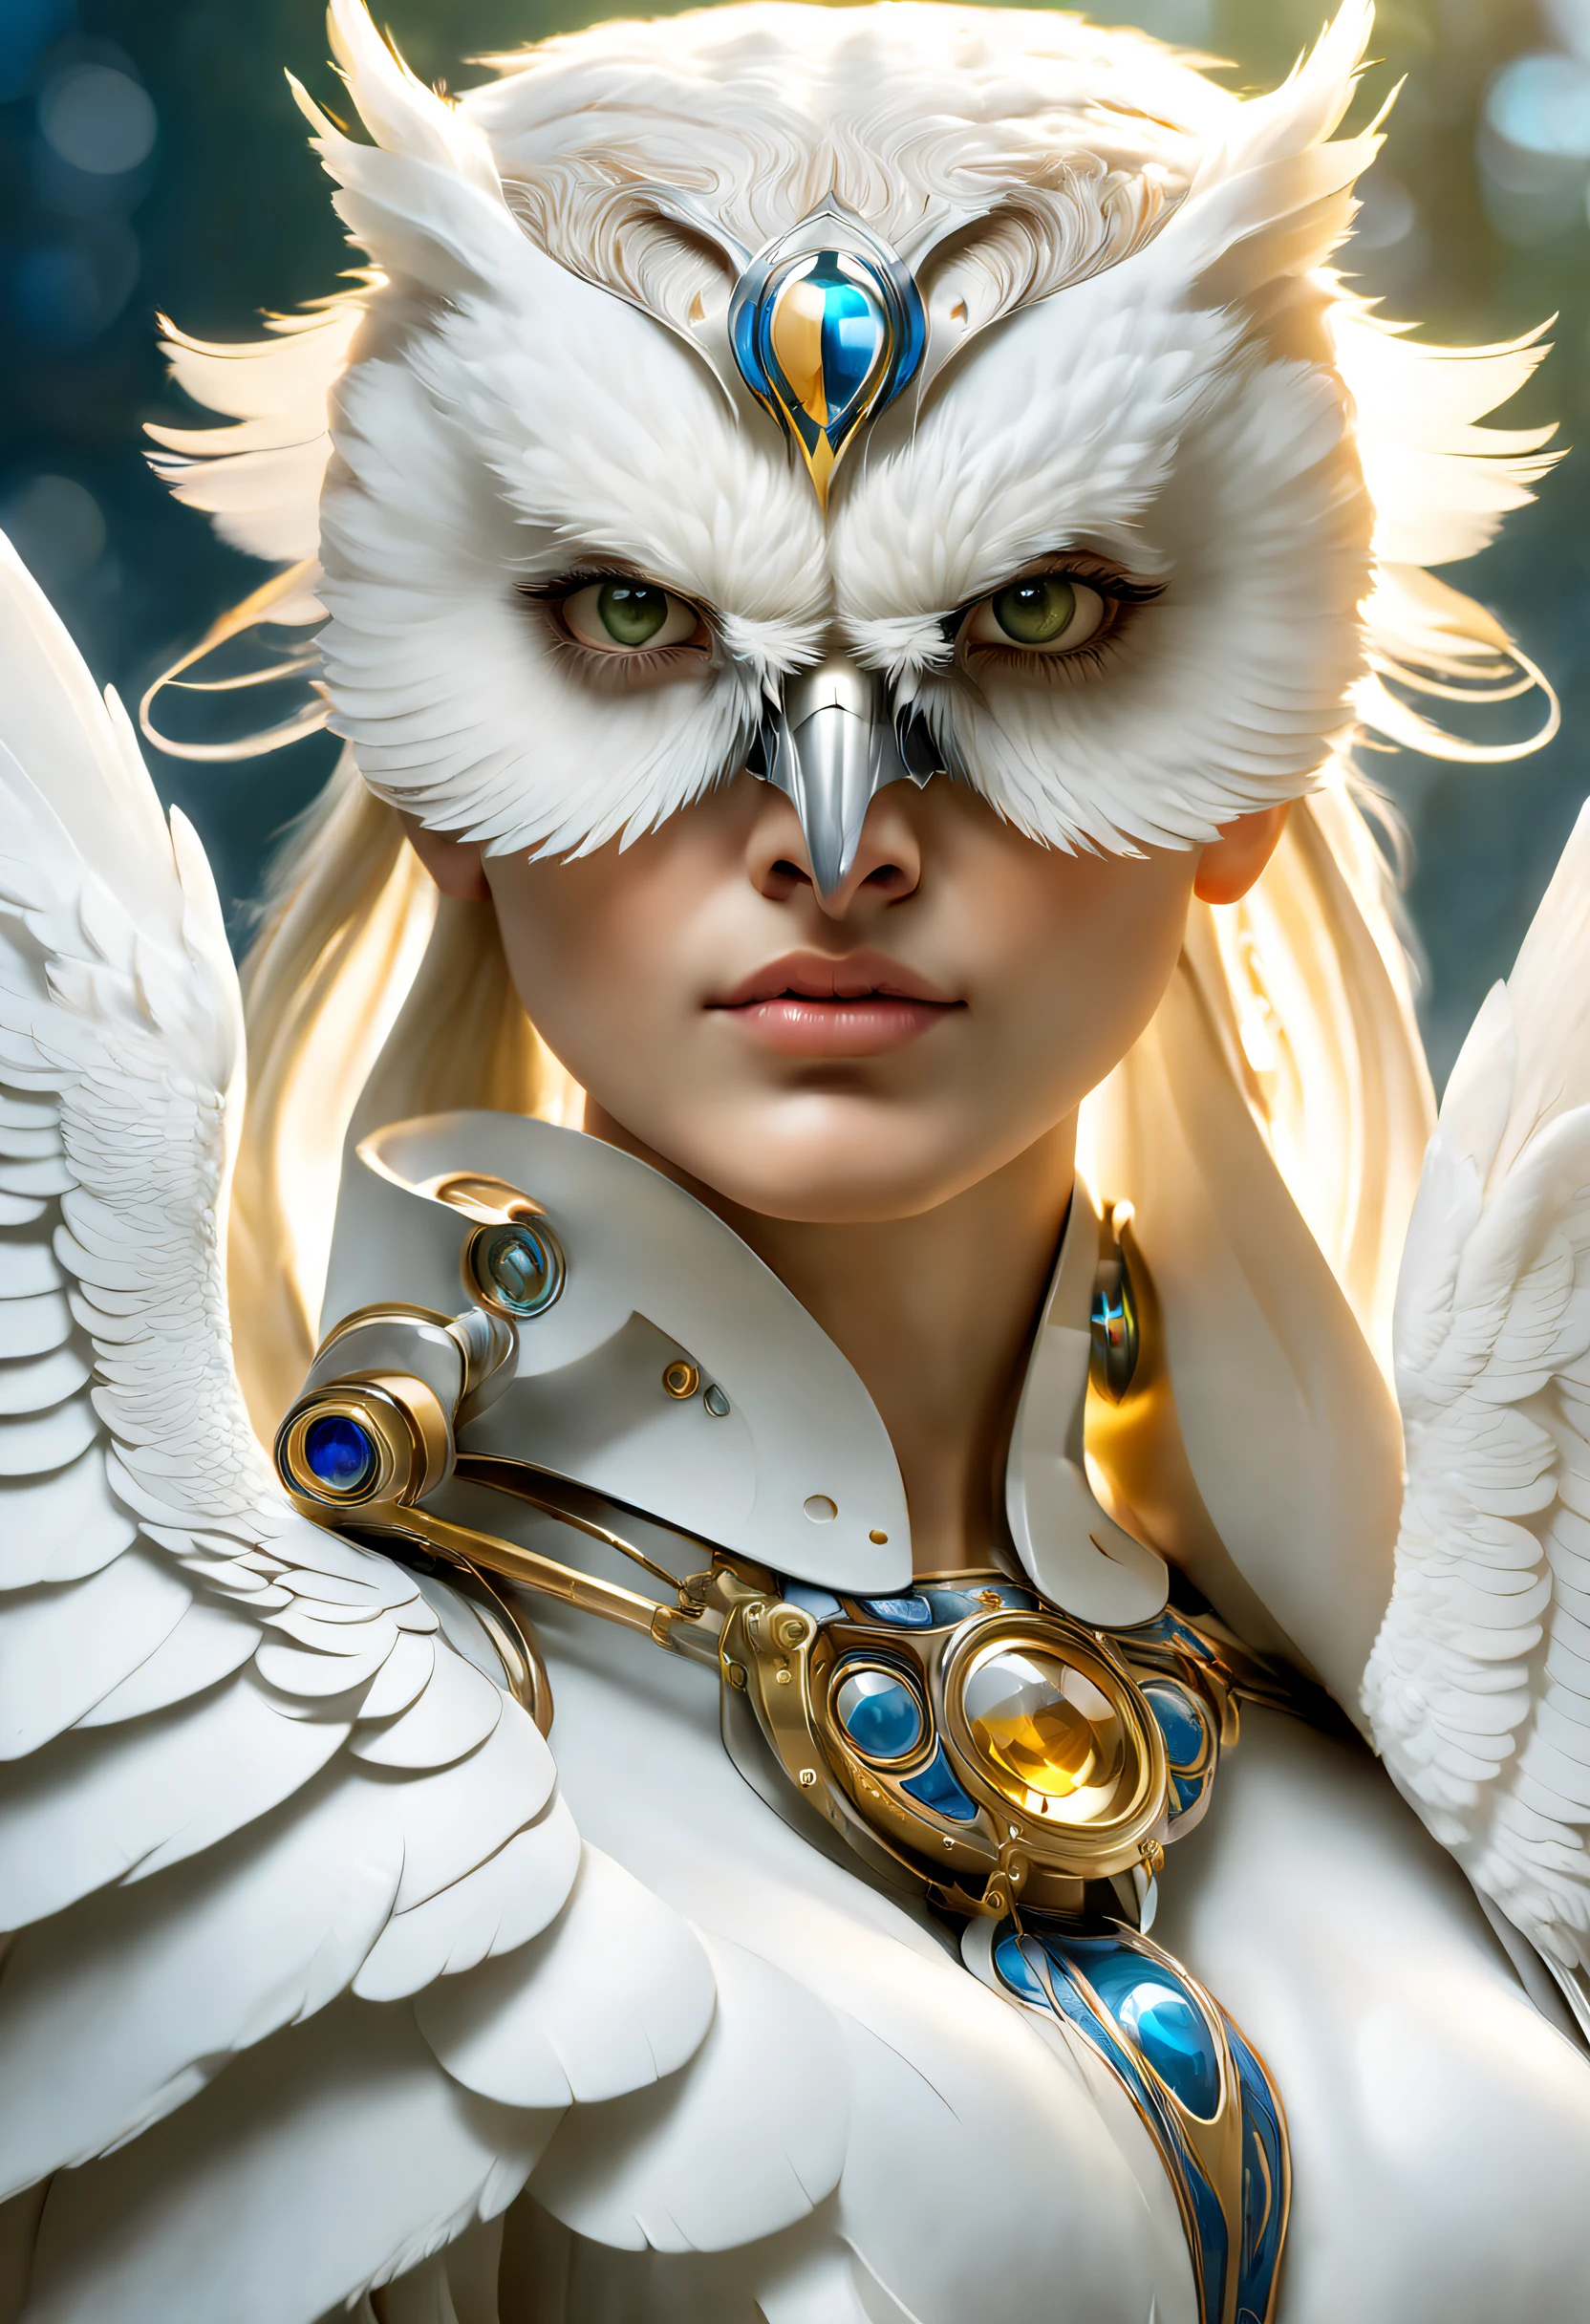 シュルレアリスム芸術スタイル (巨大な純粋なハクトウワシがアテナの肩に立っている), (真っ白 owl: 1.37), 真っ白 owl, 真っ白 owl, (肩の上に立つ: 1.37) フクロウの顔は丸い, (大きな青い目: 0.8), とても大きな目, 短く曲がったくちばし, 厚い, 真っ白 feathers, フクロウの爪は非常に頑丈です, 真っ白, それはユニークで美しい生き物です，自然の驚異と知恵が展示されています,(アテナの肩の上に立つ),
(アテナの体の左半分: 0.8), 女神の目は明るくて大きかった, 魅力的で荘厳, 彼女の顔の輪郭は優雅で洗練されている, 彼女のギリシャの鼻はまっすぐだ, 彼女の髪は金髪か黒髪, 長くて滑らか, 彼女はよく口をきつく結んでいる, 彼女の決意と決意を示す. 彼女の肌は白く、傷一つない, 象牙色の皮, 威厳と美しさ, 輝く金色の光, オリーブの枝を身に着ける,,{{傑作}}, {{{最高品質}}},{{超詳細}}, {{図}},{{乱れた髪}},{{傑作}},{{{最高品質}}},{{超詳細}}, {{{図}}},{{乱れた髪}},キャラクターのコンセプトアート,ゲームシーングラフ,アルフォンス・ミュシャの美しい絵画,図,傑作,マットペイント,謎めいた雰囲気,似顔絵,被写界深度 (自由度),フルボディレズビアン,閉じる,ドラマチックな照明